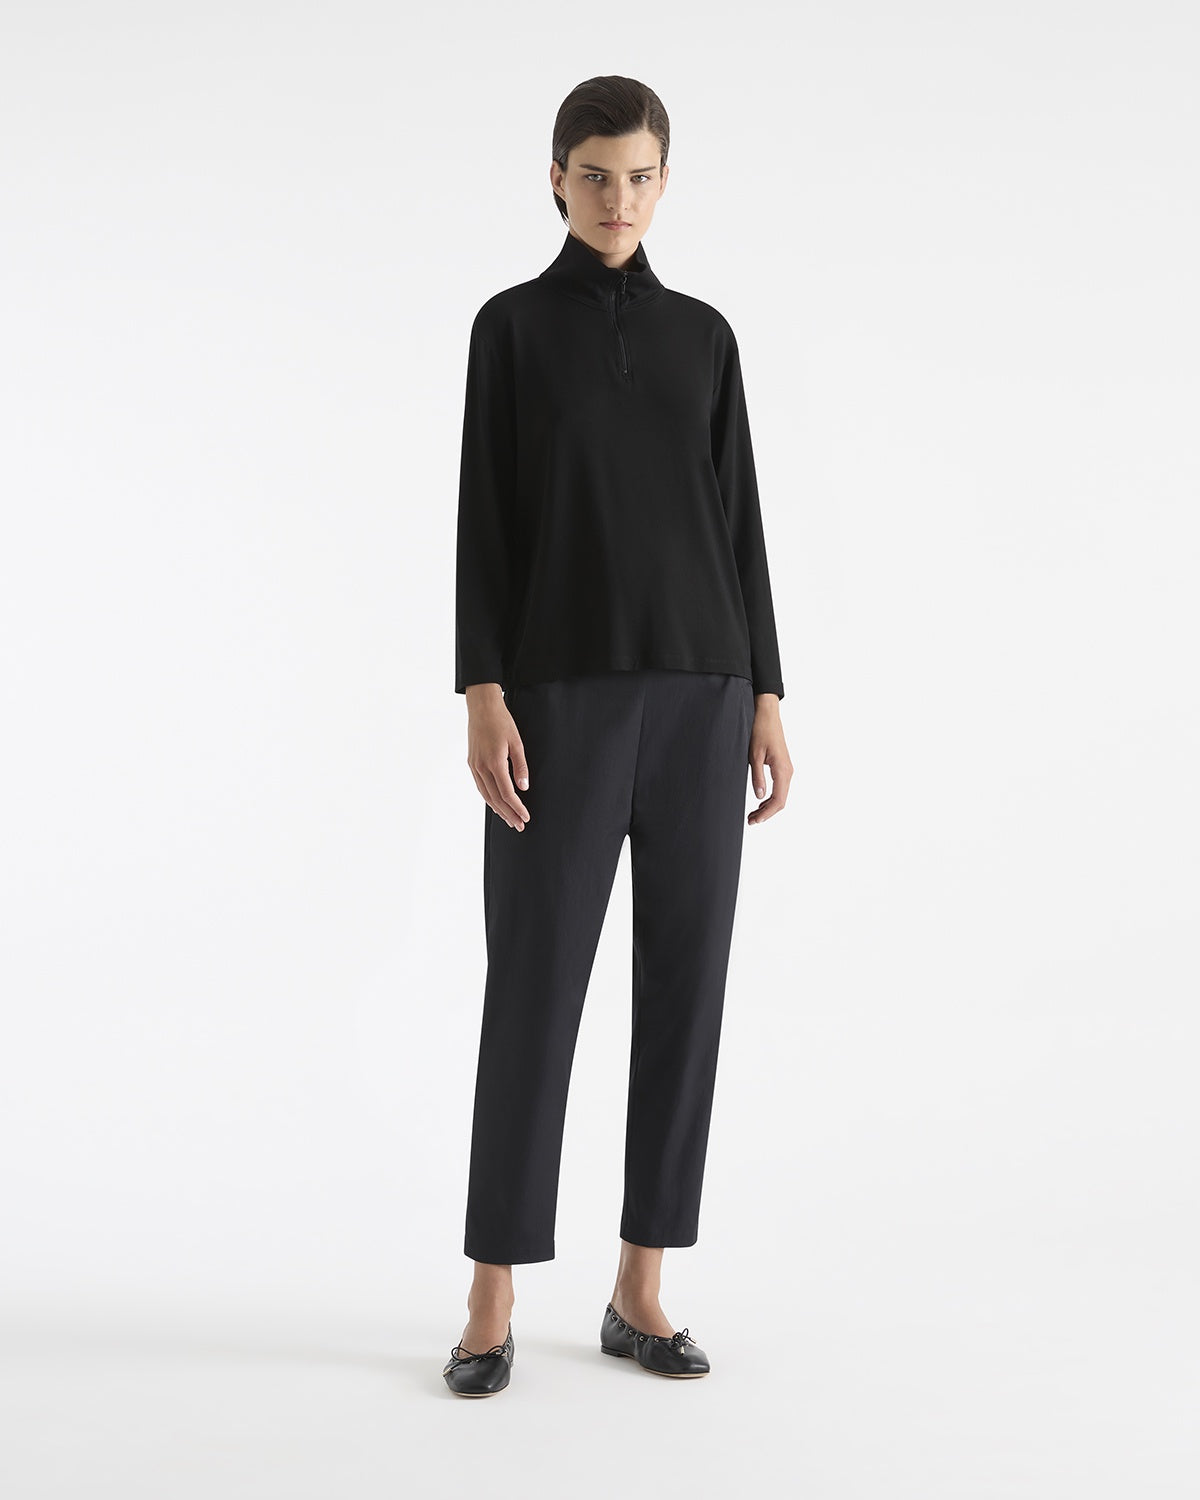 Mela Purdie Half Zip Sweater F01 8259 in Black